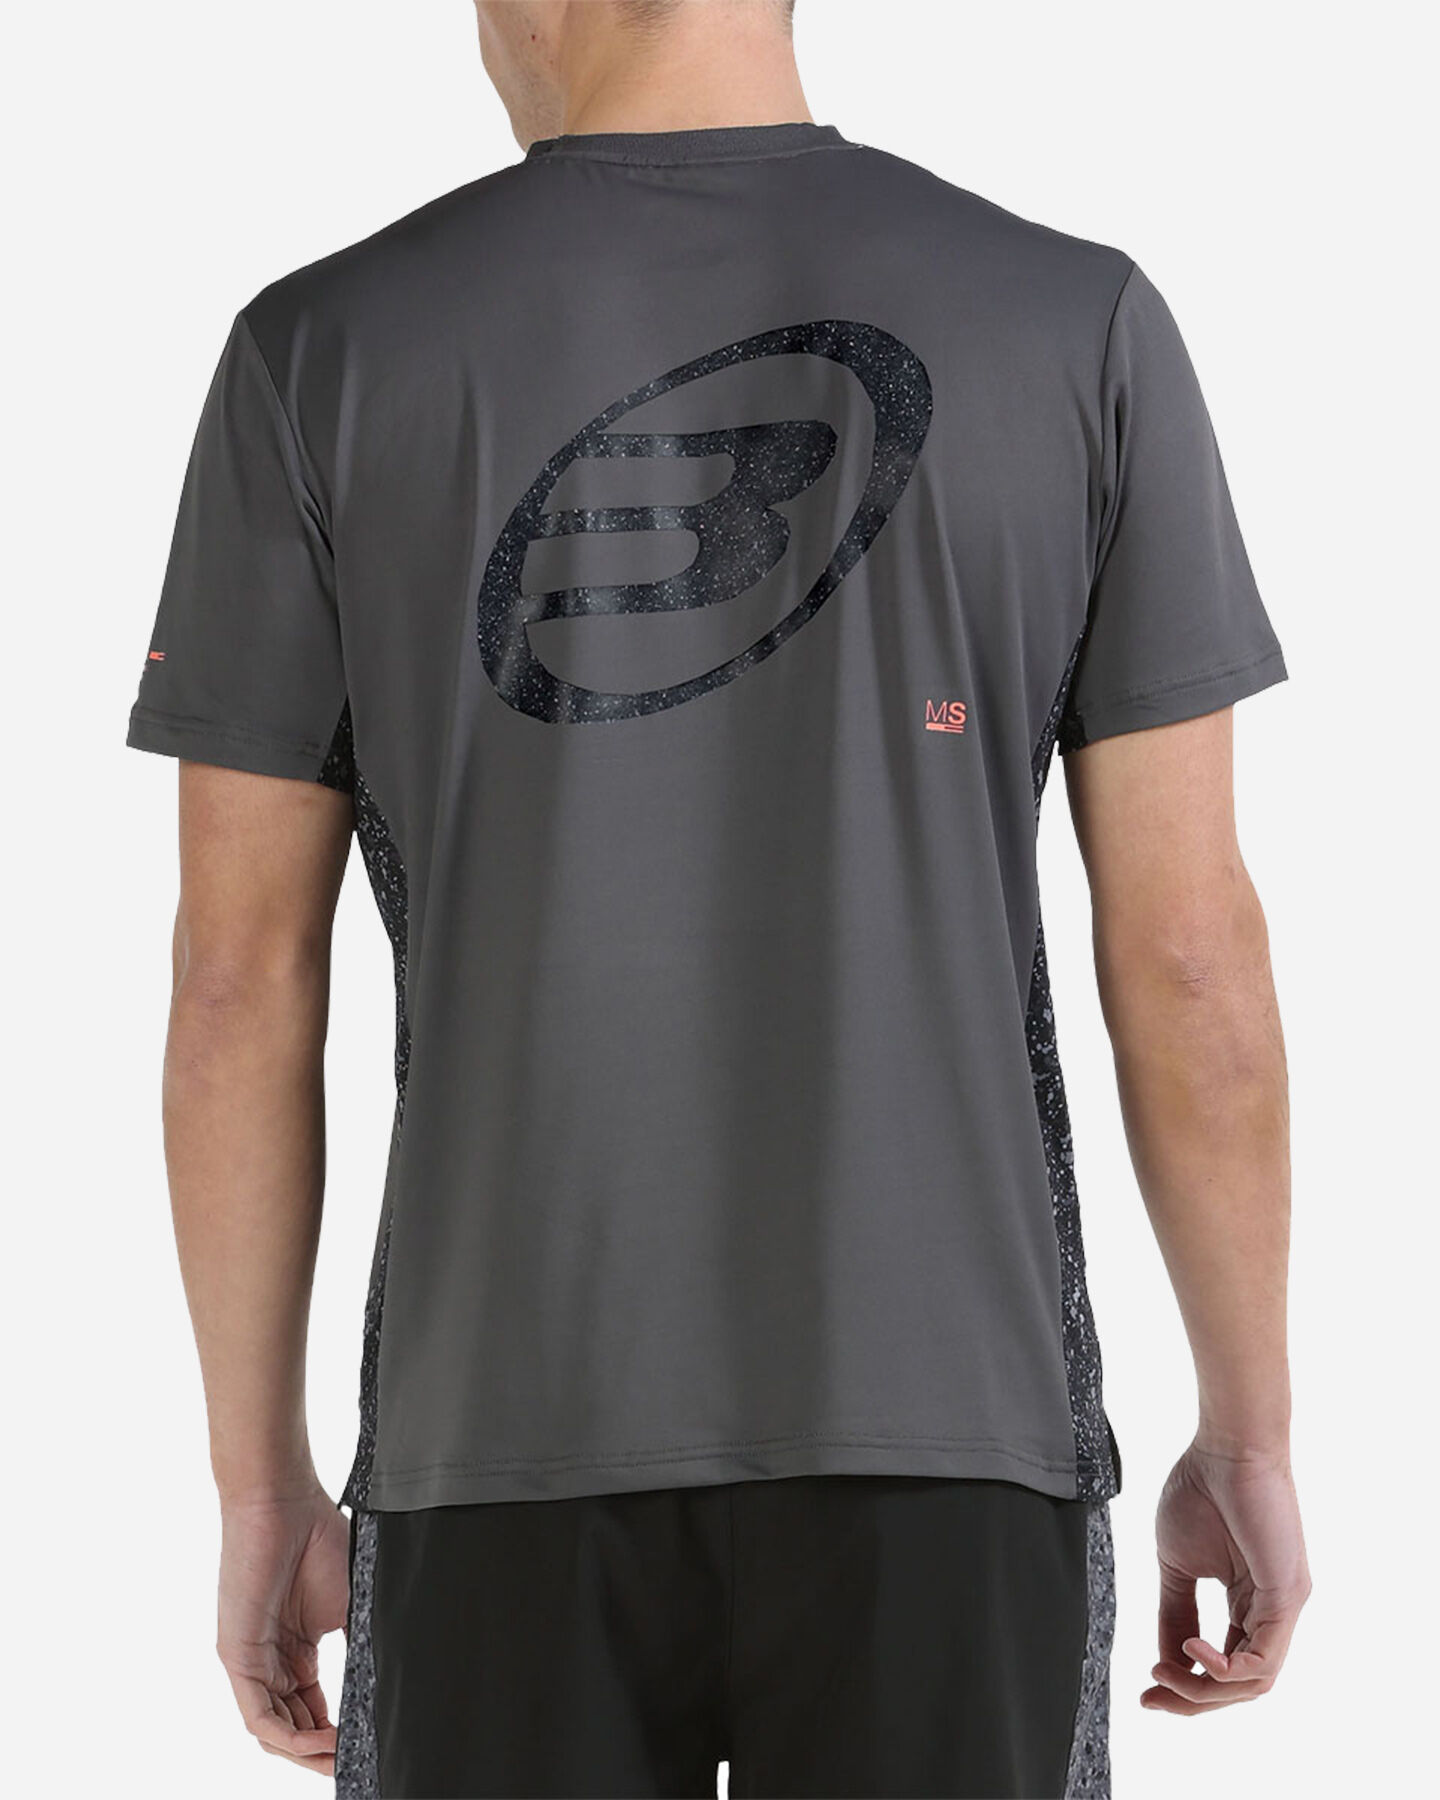  T-Shirt tennis BULLPADEL MIXTA M S5497724|084|S scatto 2